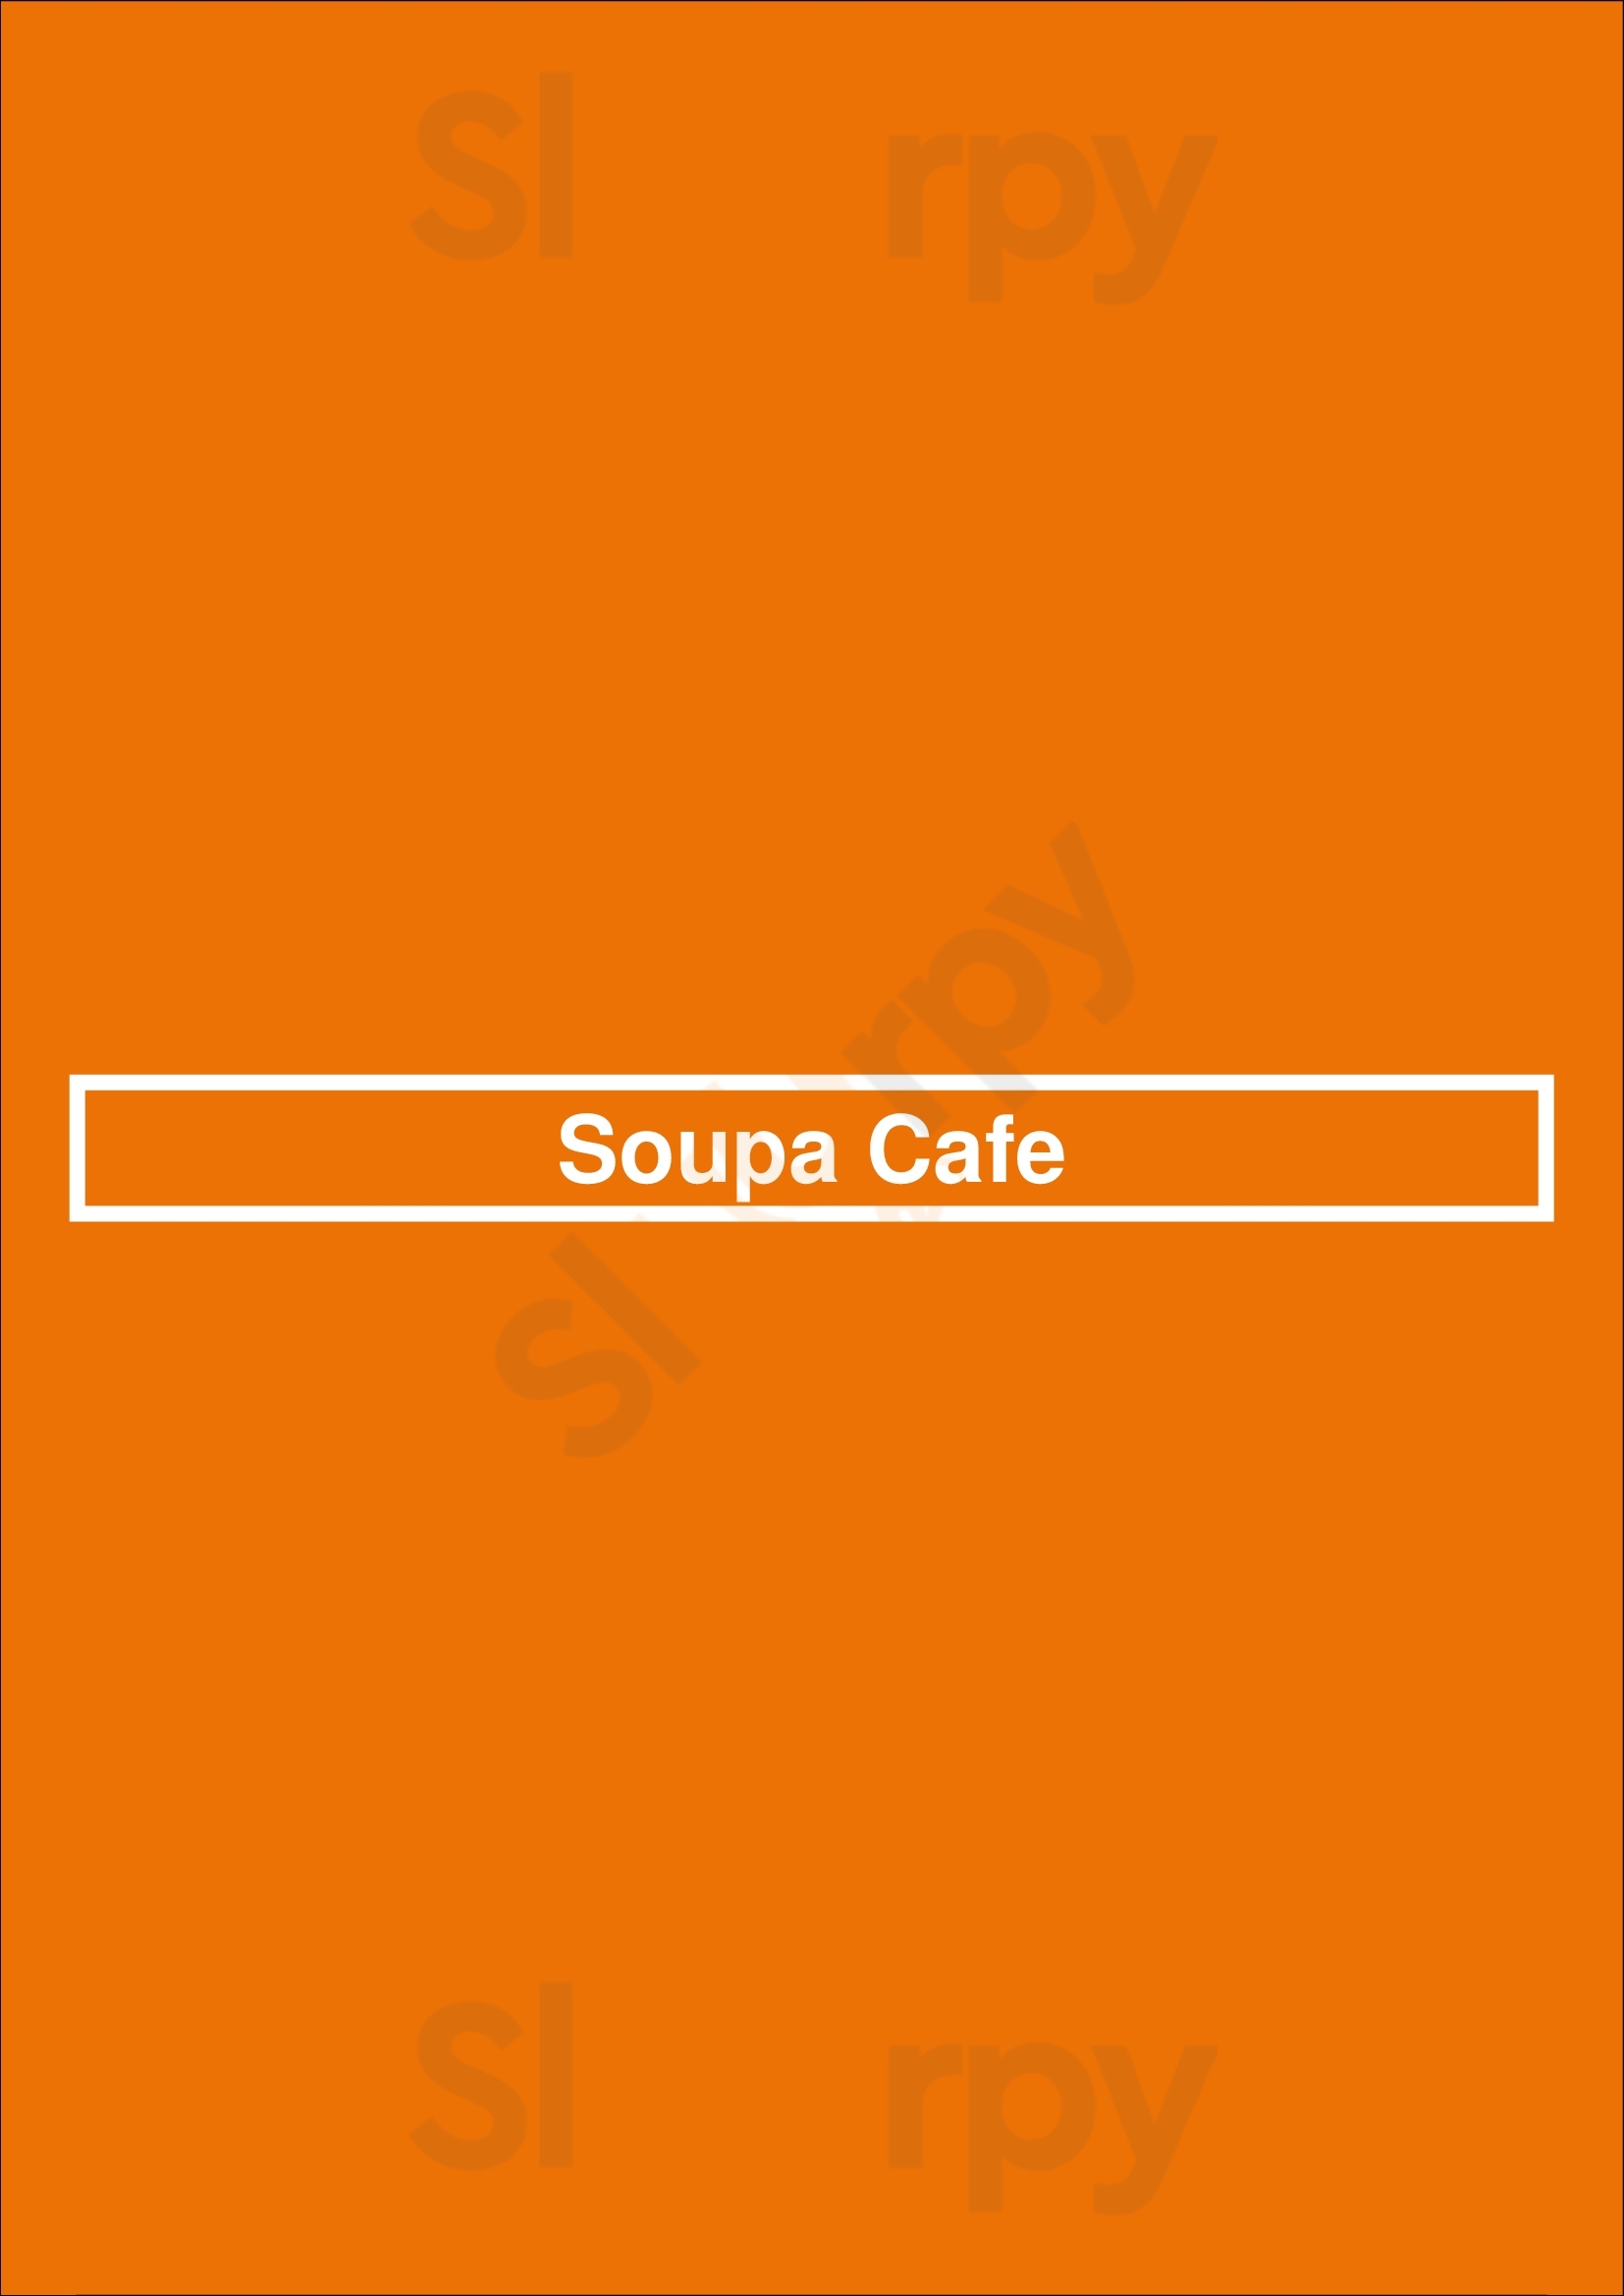 Soupa Cafe Victoria Menu - 1